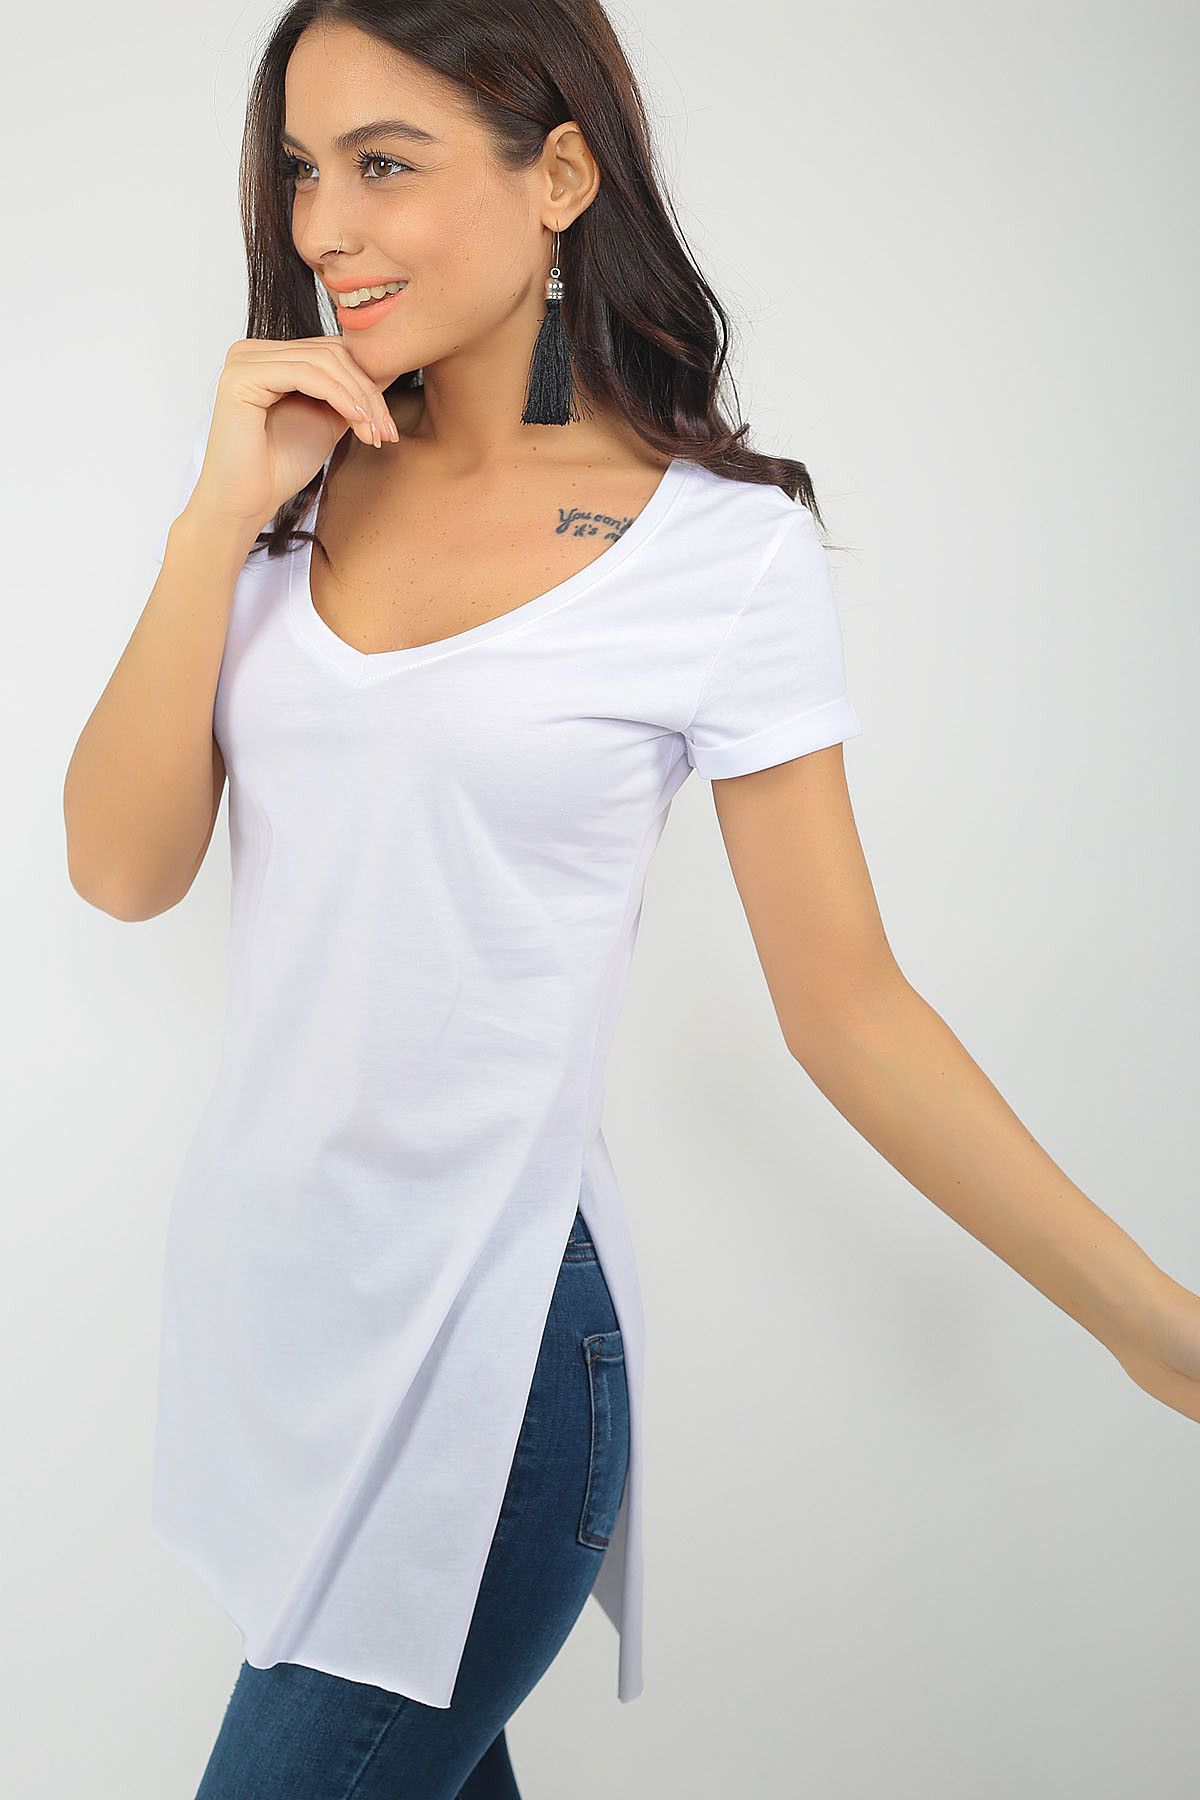 By Saygı Kadın Beyaz Kolu Katlamalı Yanları Yarı Dikişsiz Yaka Pamuklu T-Shirt S-18K0420010